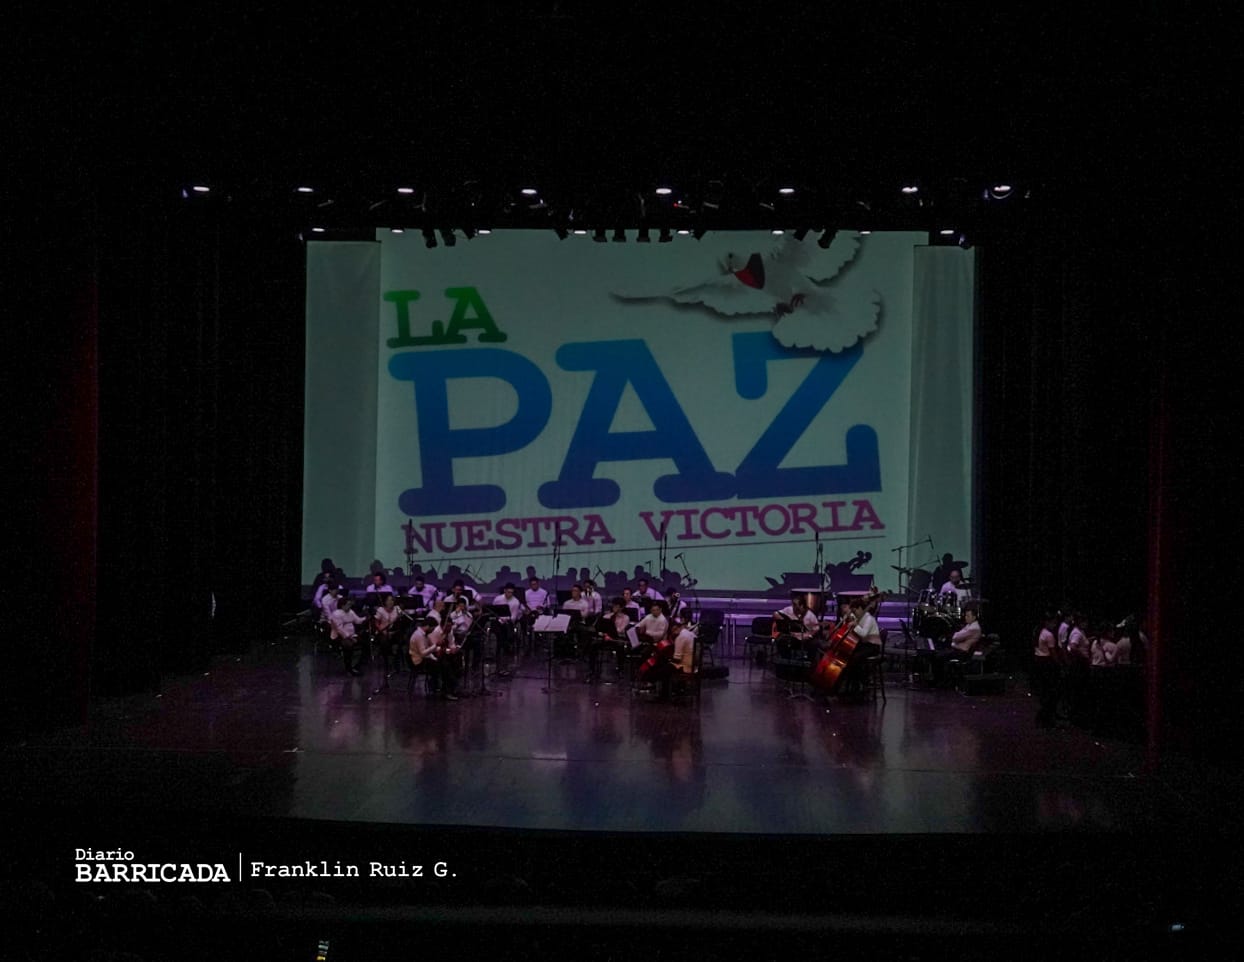 Estudiantes de Nicaragua celebran la alegría de vivir en paz con gala artística